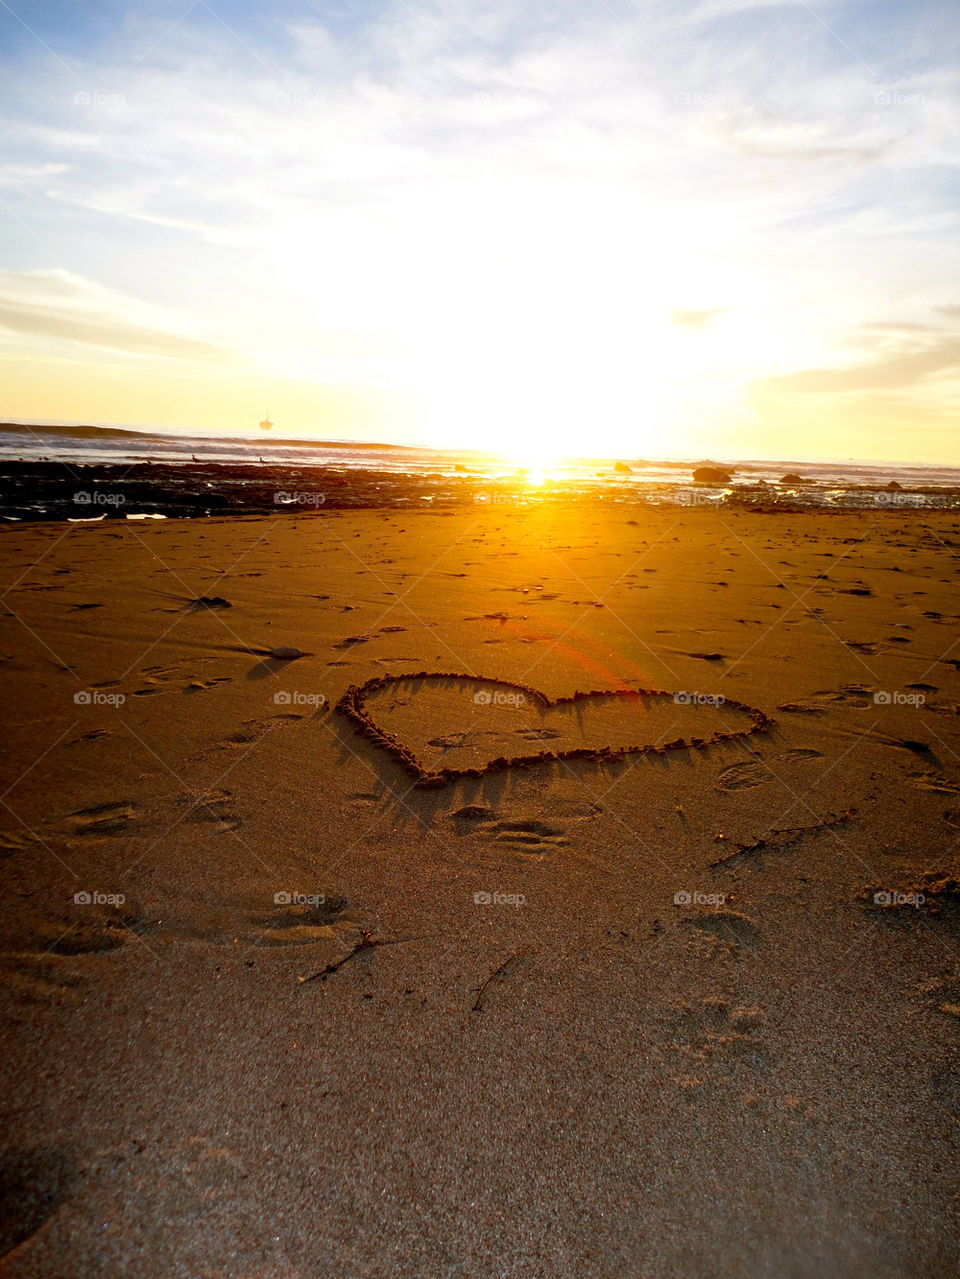 beach sunset sand heart by sabreeeeen